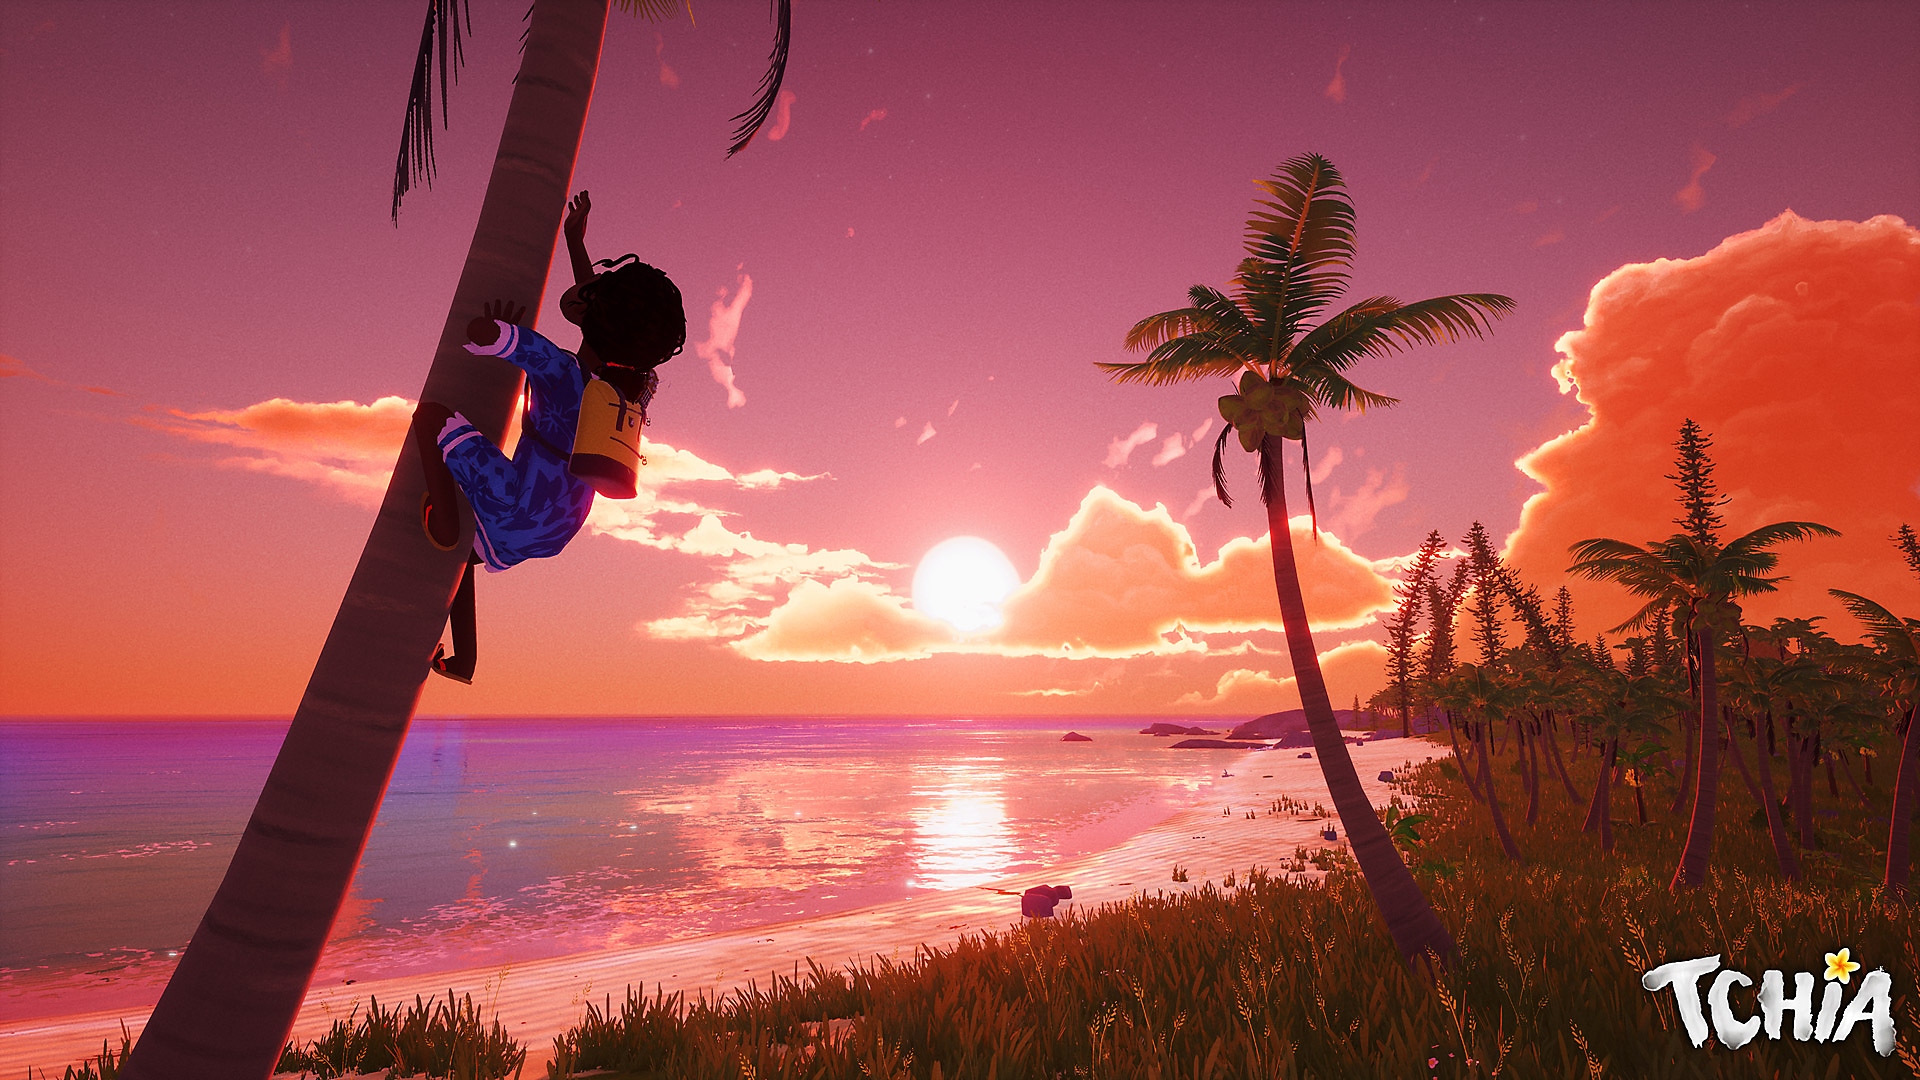 Screenshot von Tchia, der die Protagonistin zeigt, wie sie einen Baum vor einem wundervollen Sonnenuntergang in der Distanz erklimmt